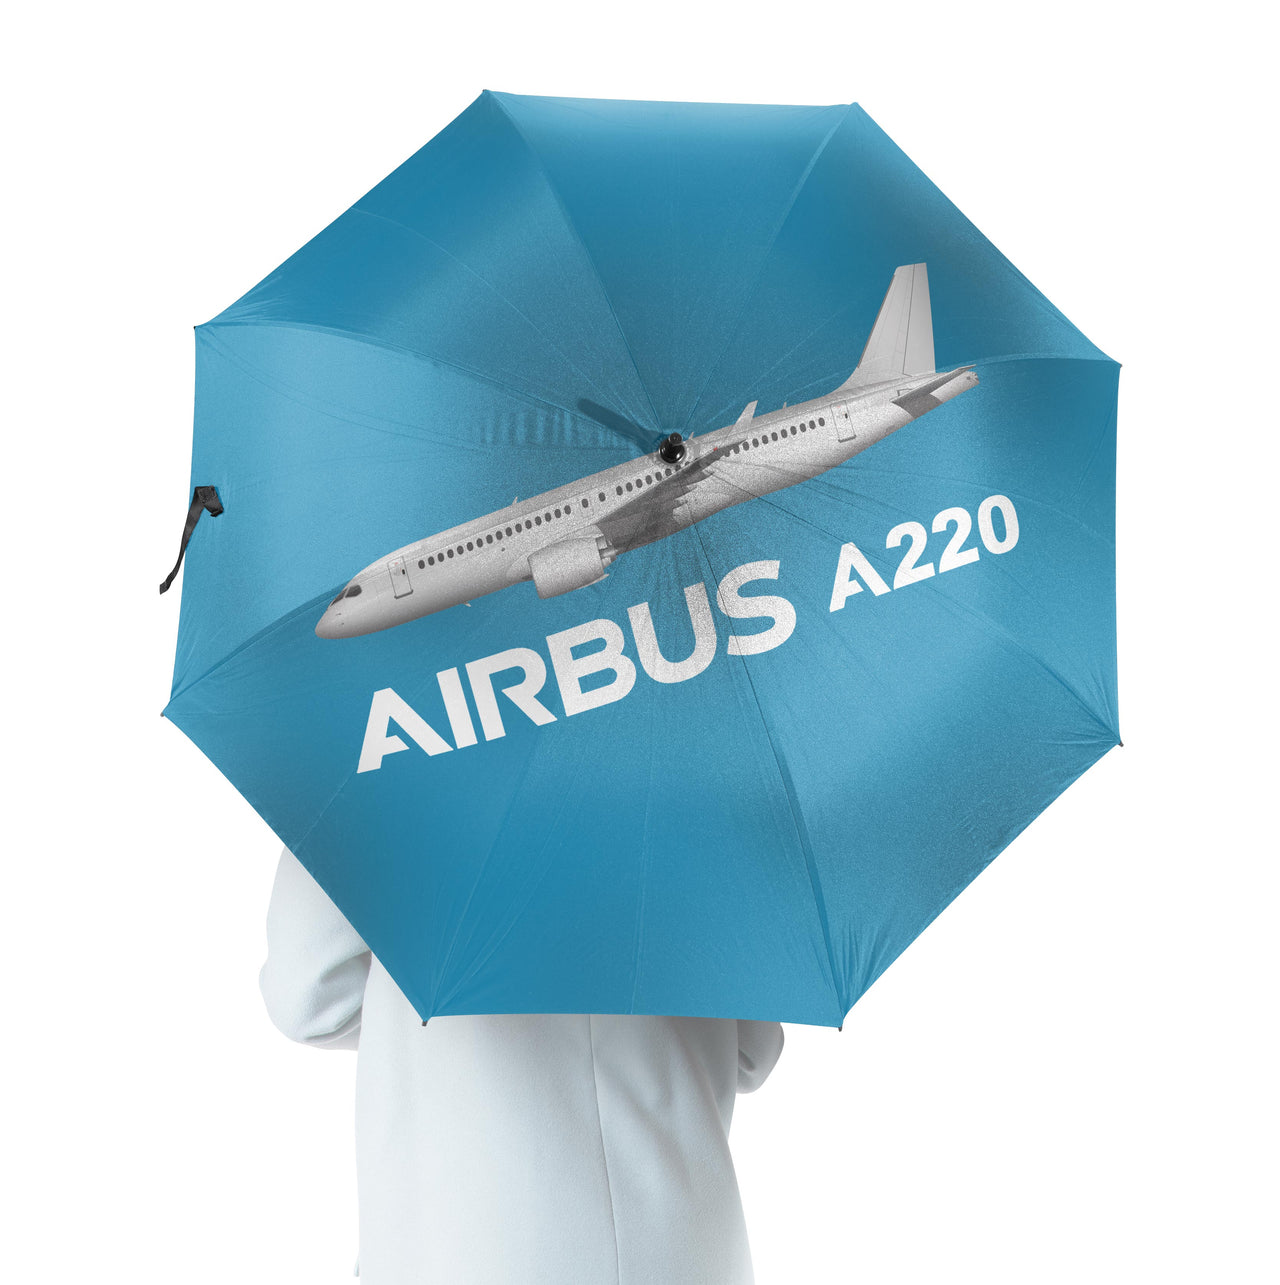 The Airbus A220 Designed Umbrella